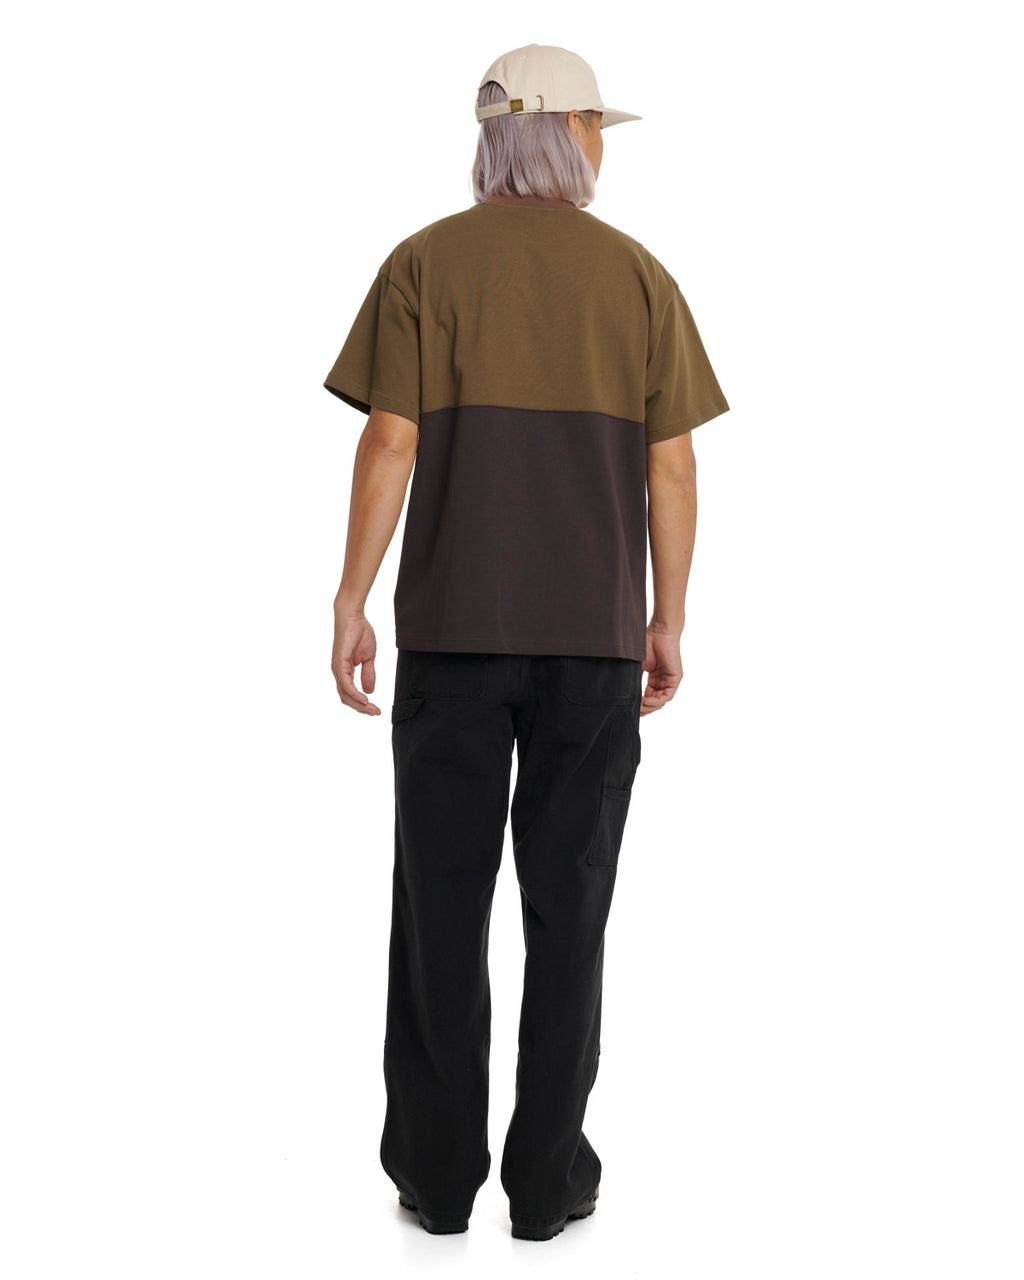 Hagard Short Sleeve Football Shirt - Olive 6